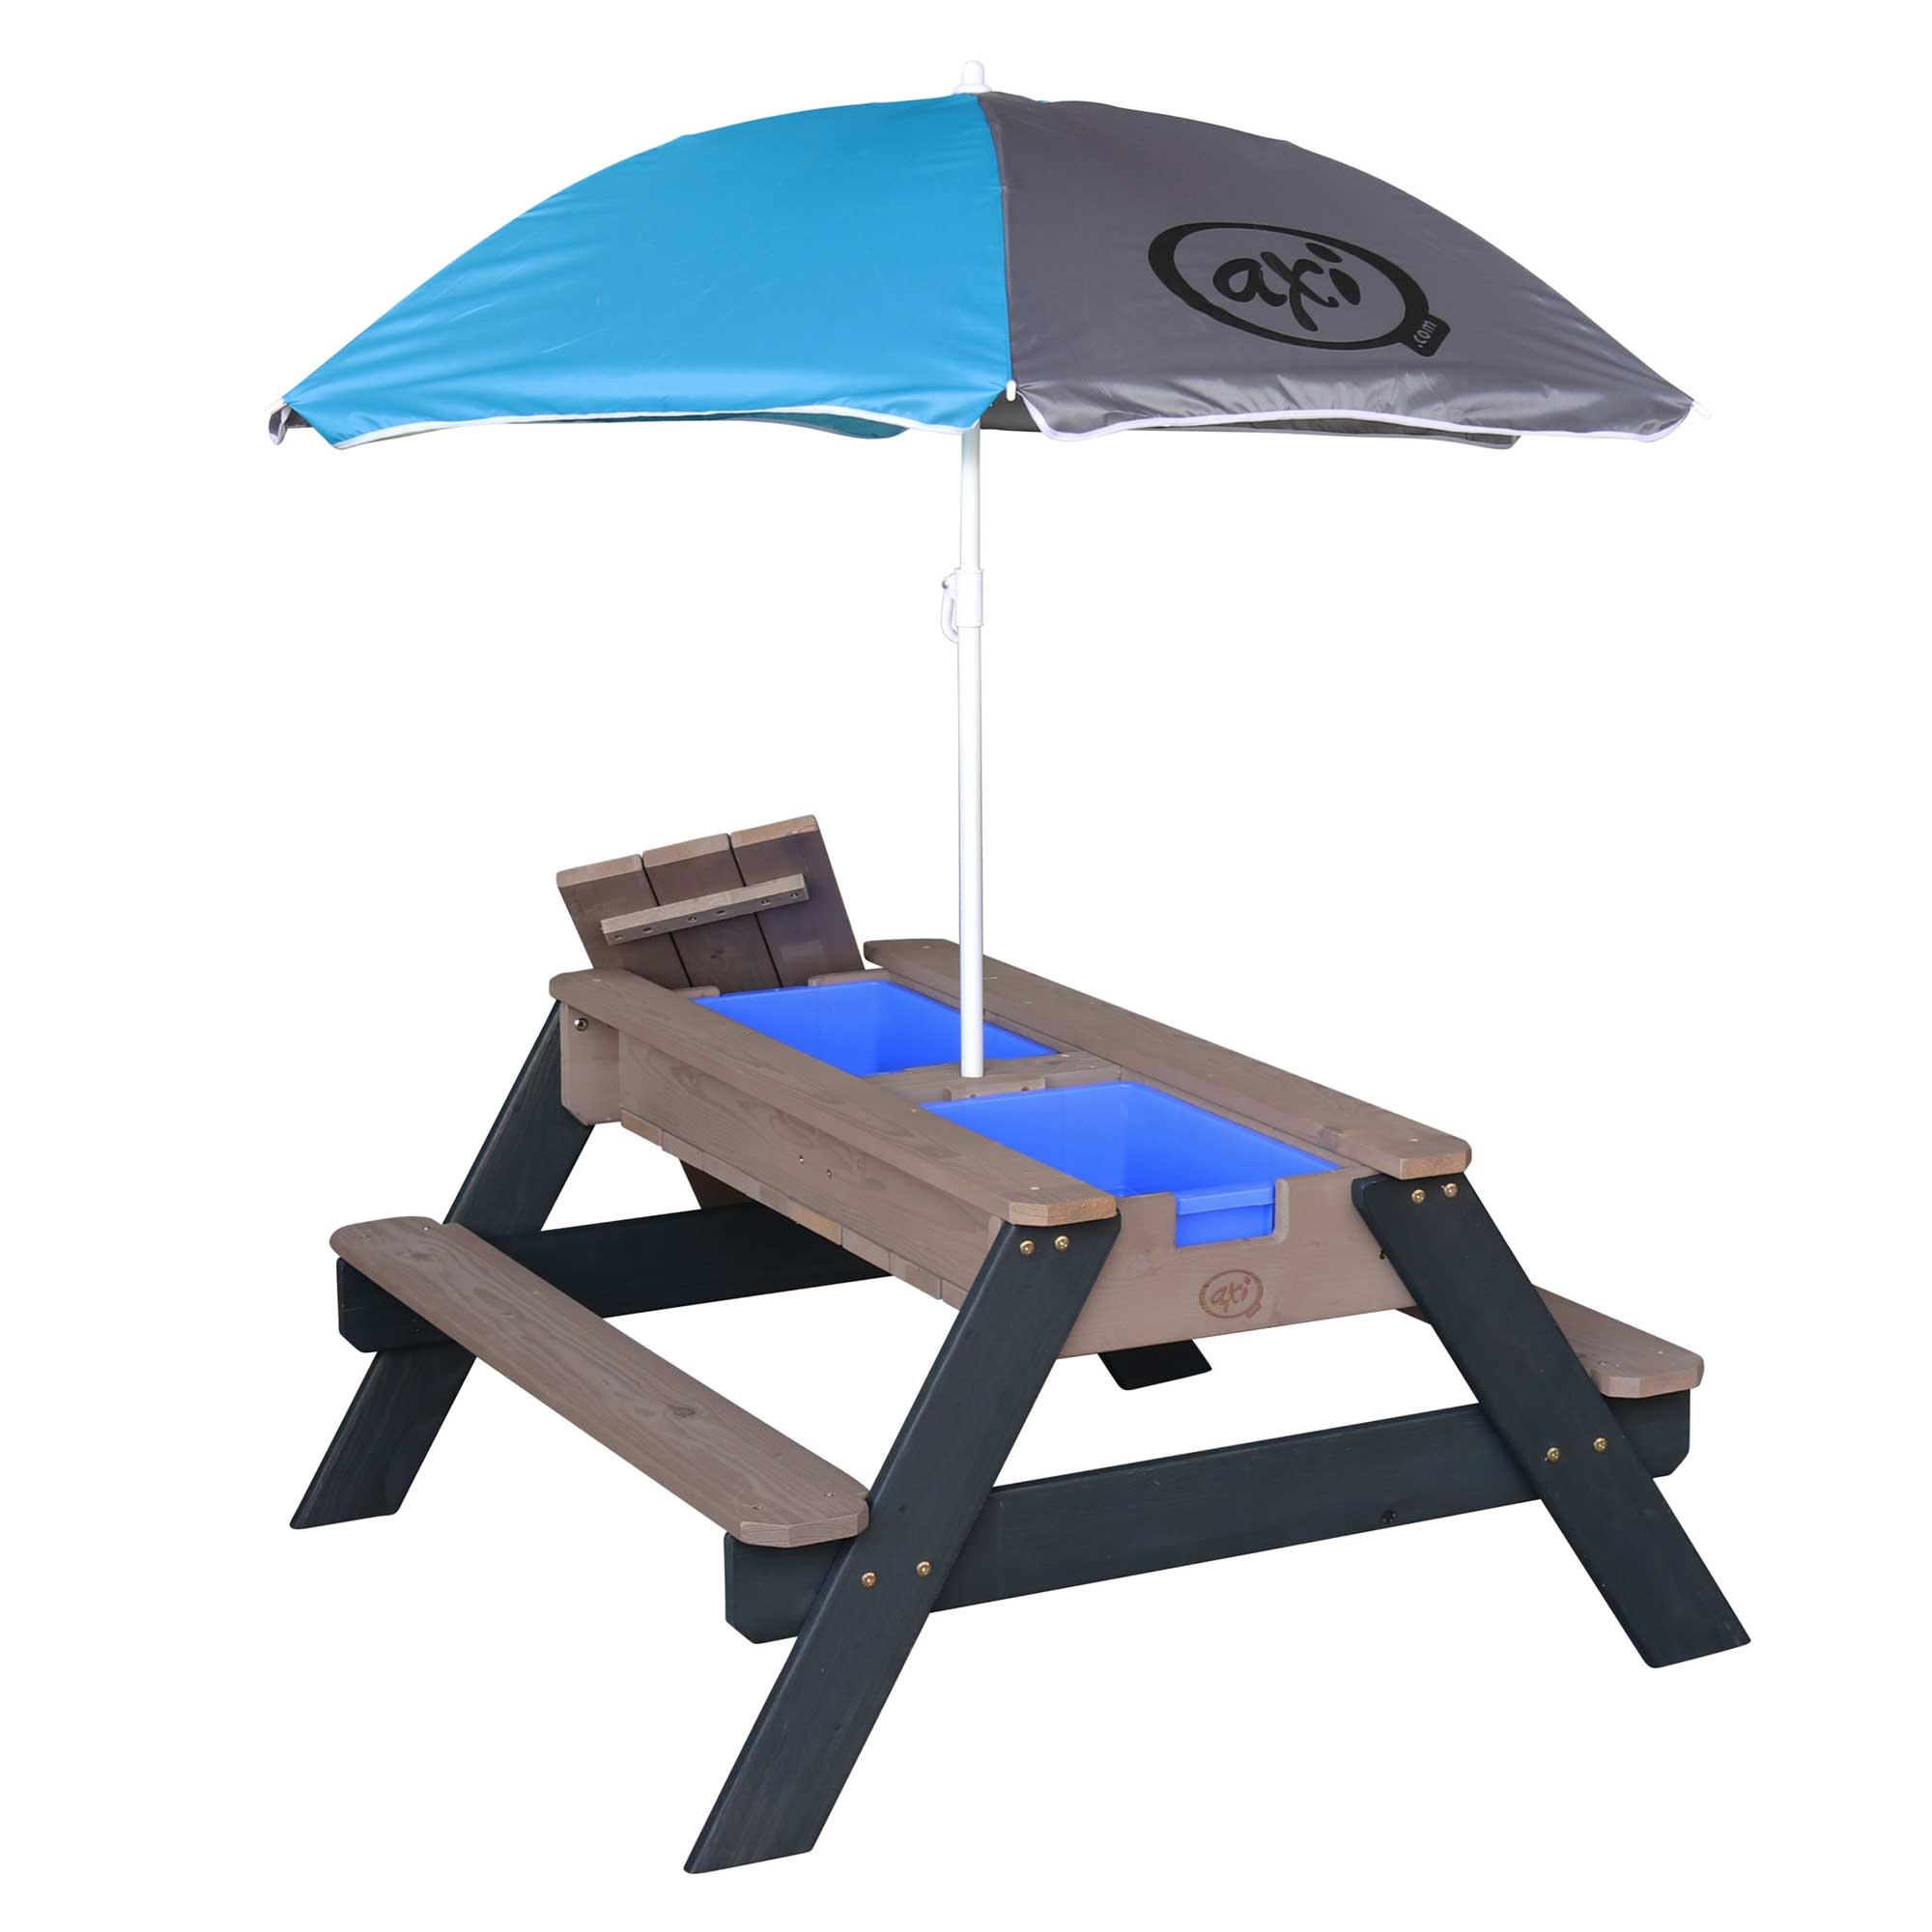 Table sable et eau anthracite avec parasol